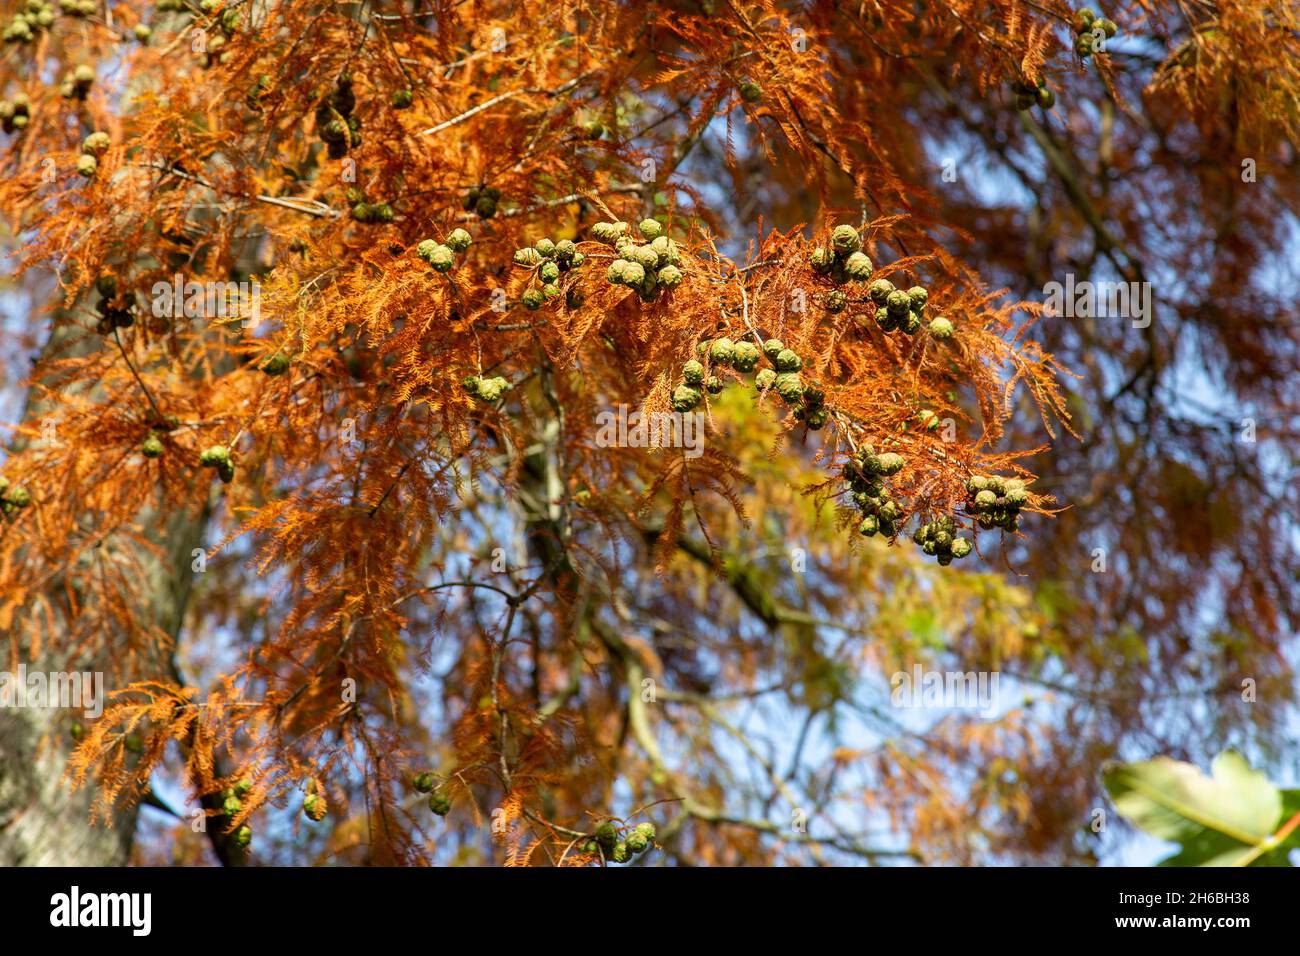 Zapfen und herbstlich rotgefärbte Nadeln eines Laub-Sumpfzypress-Baumes (Taxodium destichum), London, Großbritannien Stockfoto